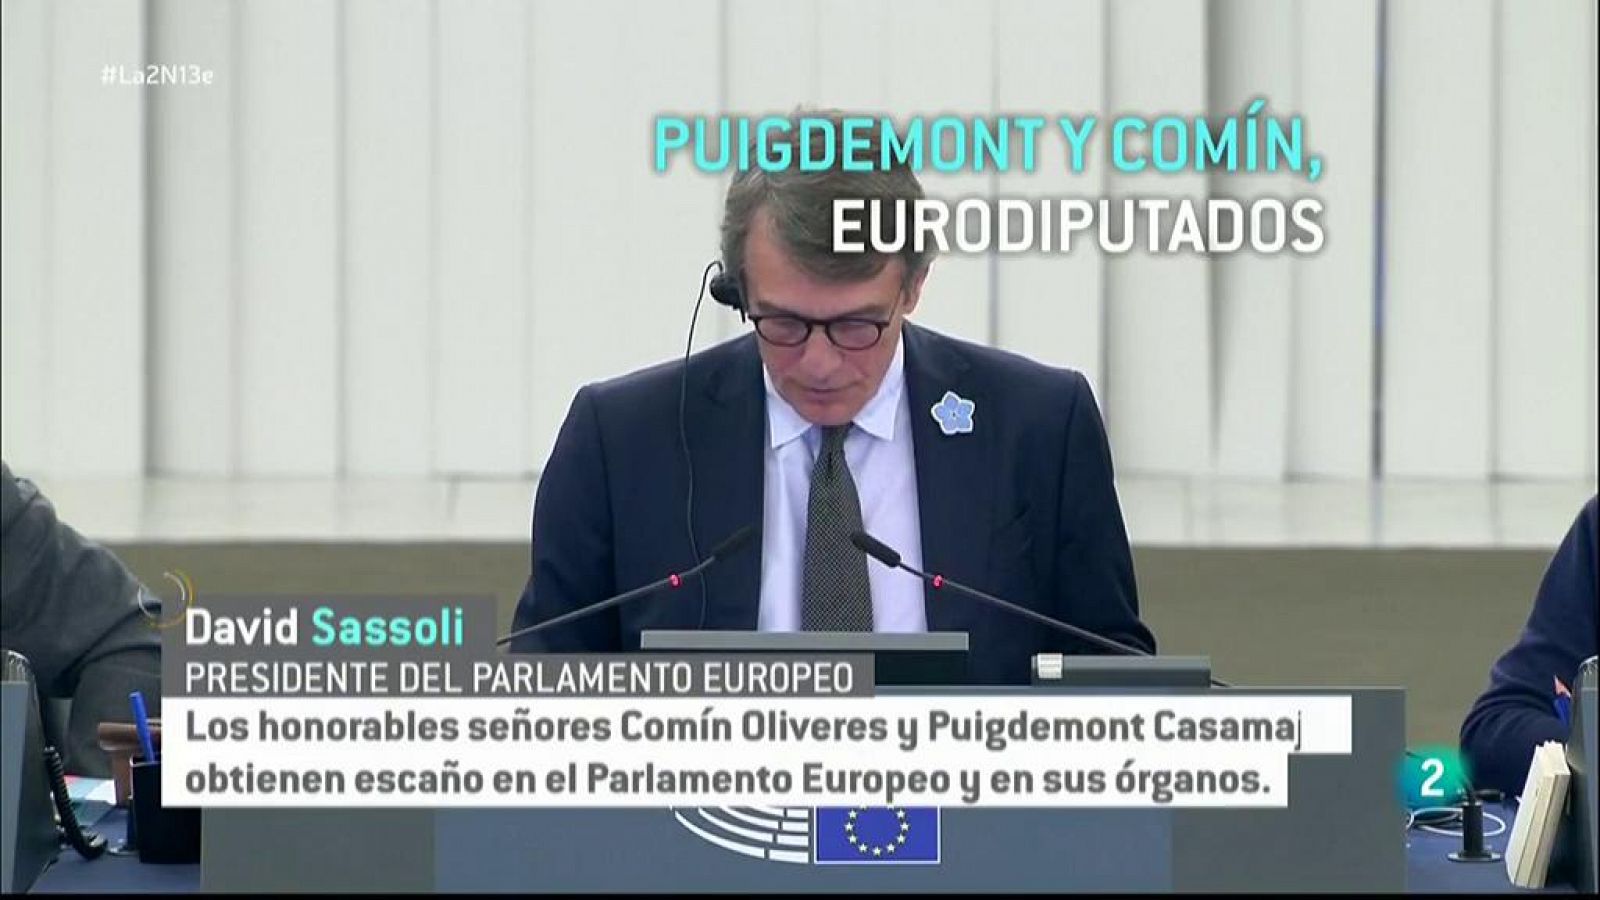 Puigdemont y Comín: eurodiputados